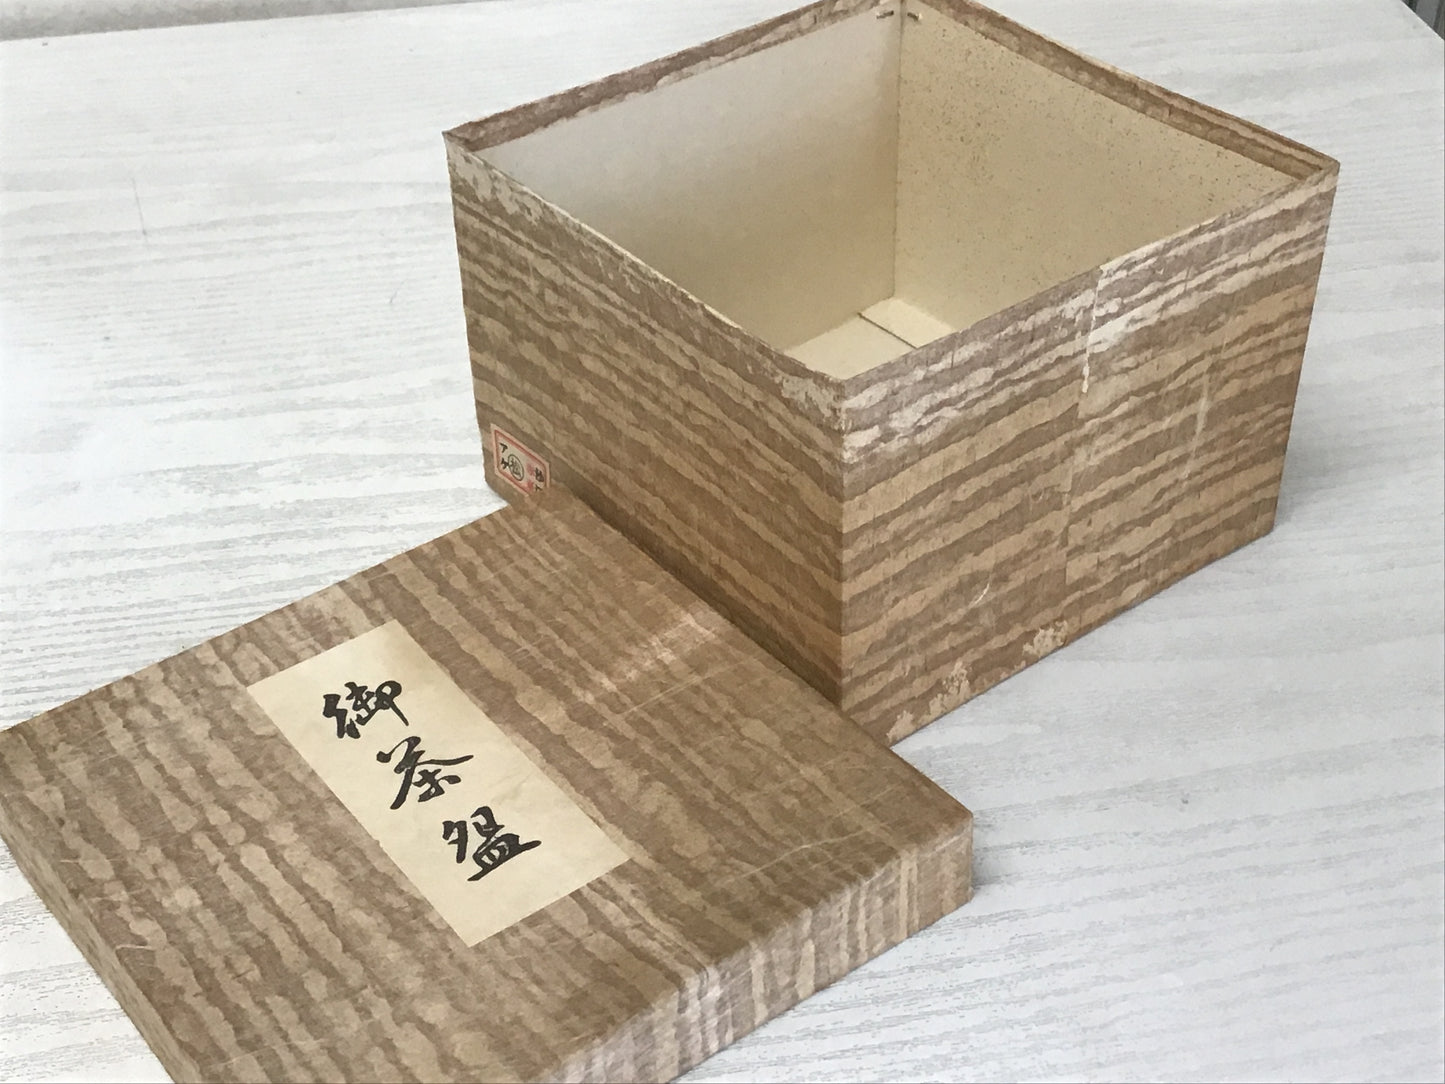 Y1432 CHAWAN Seto-ware Tenmoku signed box Japanese bowl pottery tea ceremony